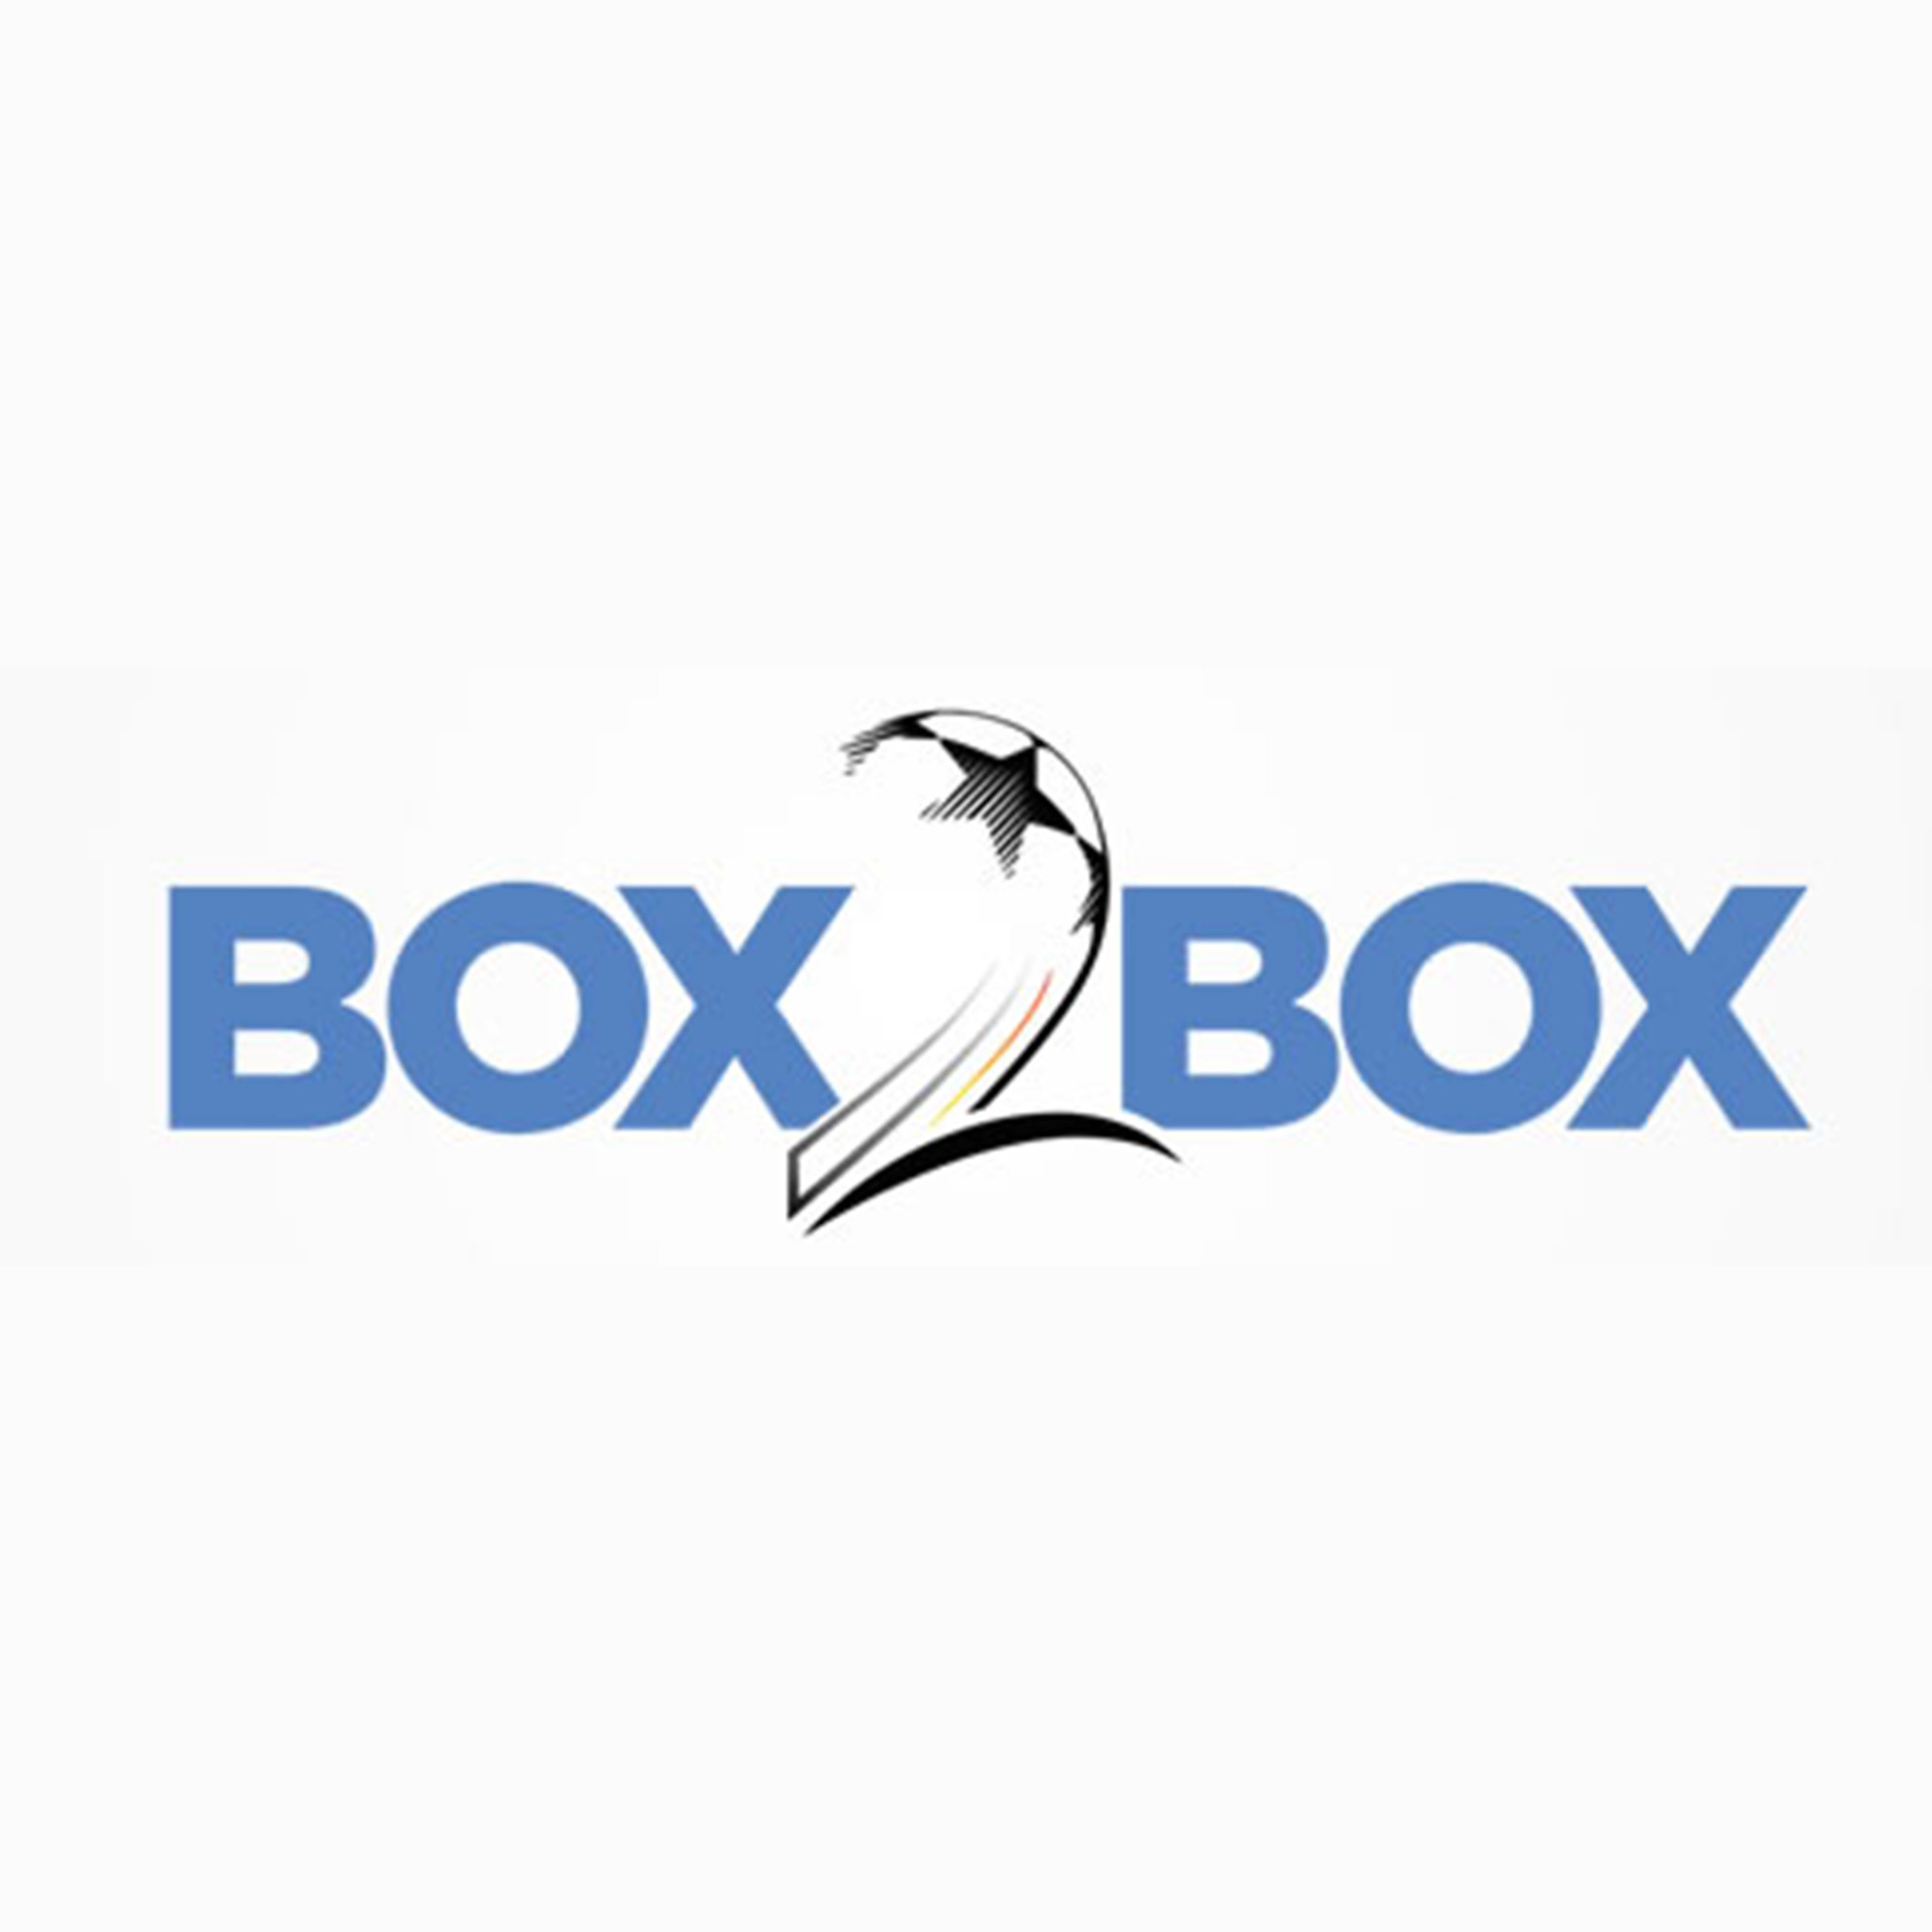 Paul Wade on Box2Box